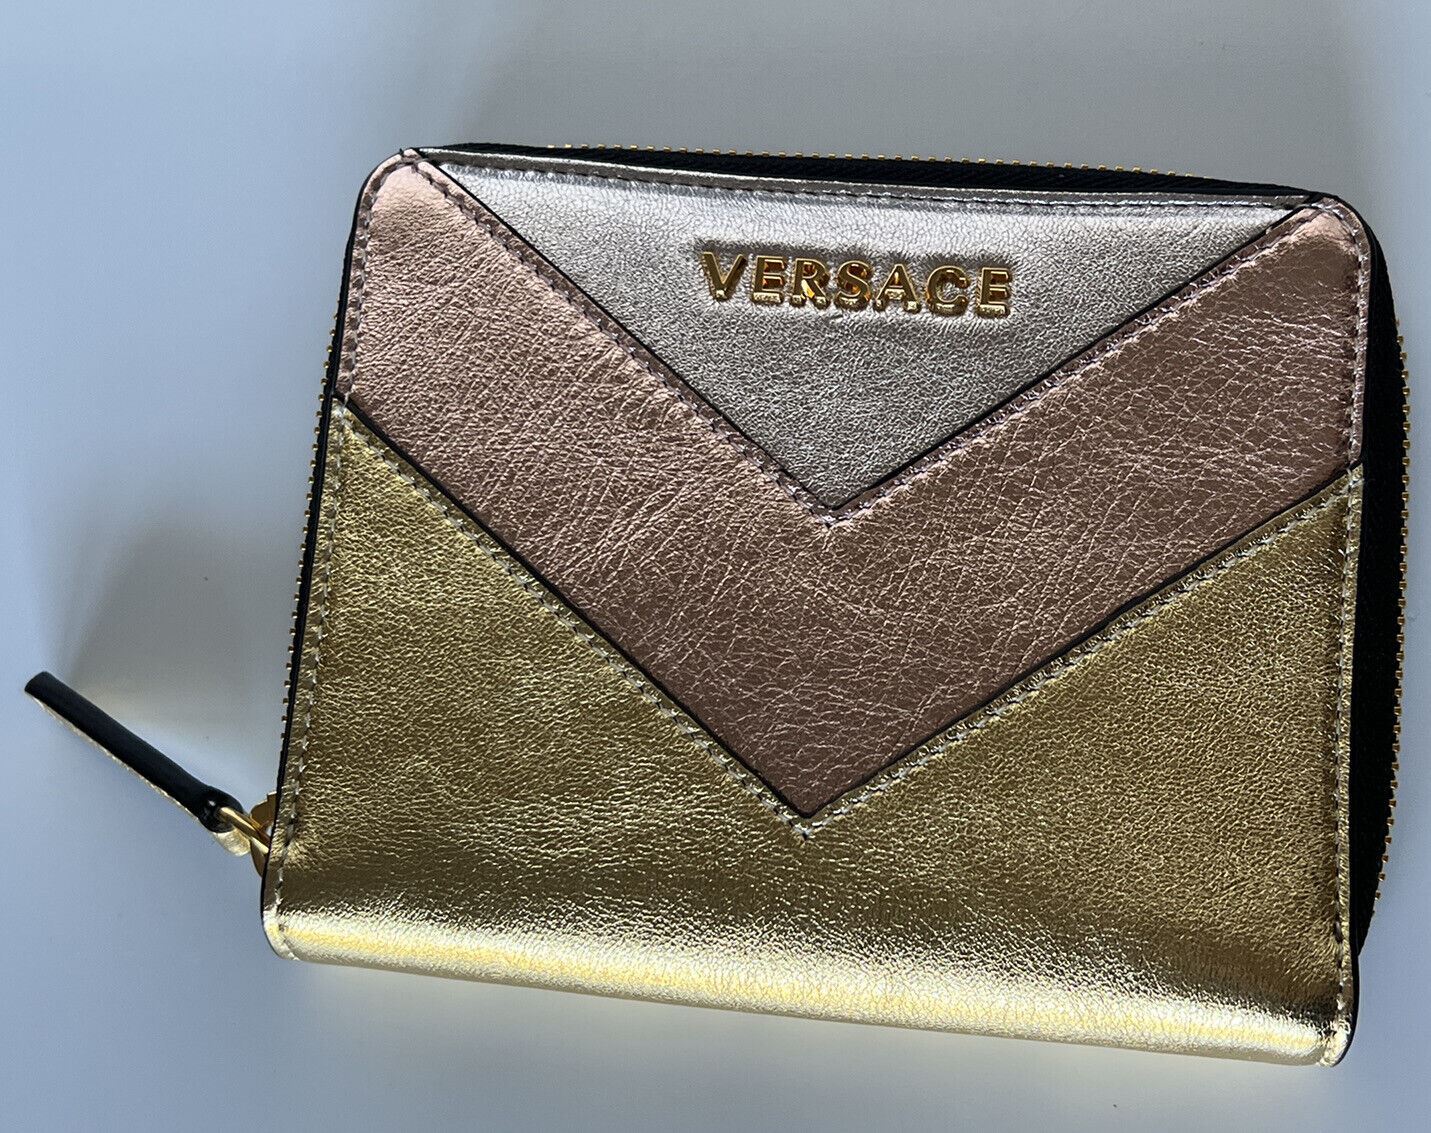 Neu mit Etikett: Versace Gold/Pink/Silber Kalbsleder-Geldbörse mit mittlerem Reißverschluss, hergestellt in Italien 593 